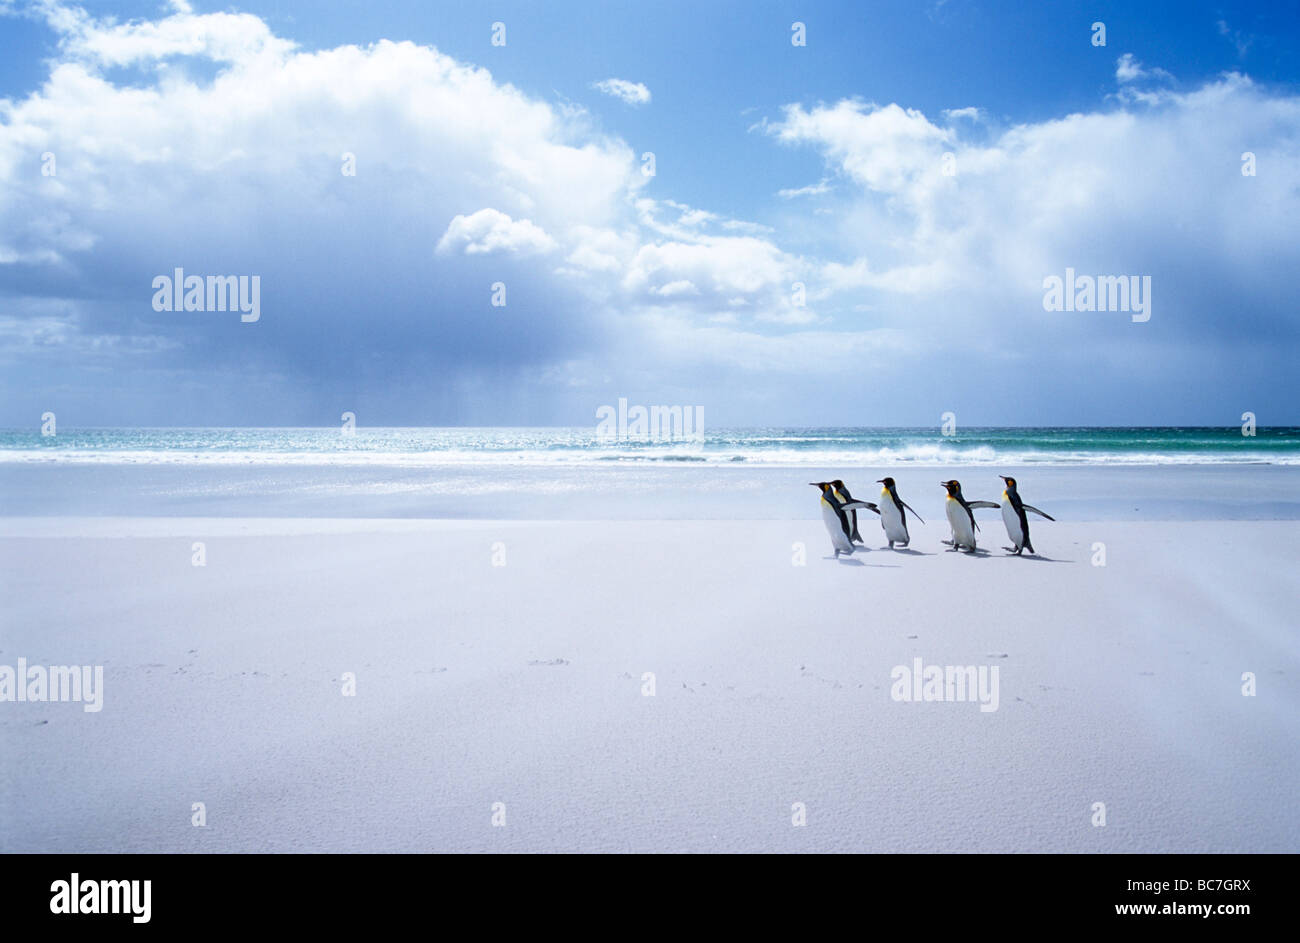 Un grupo de Pingüinos rey, aptenodytes patagonicus, caminar sobre una playa de arena blanca Foto de stock